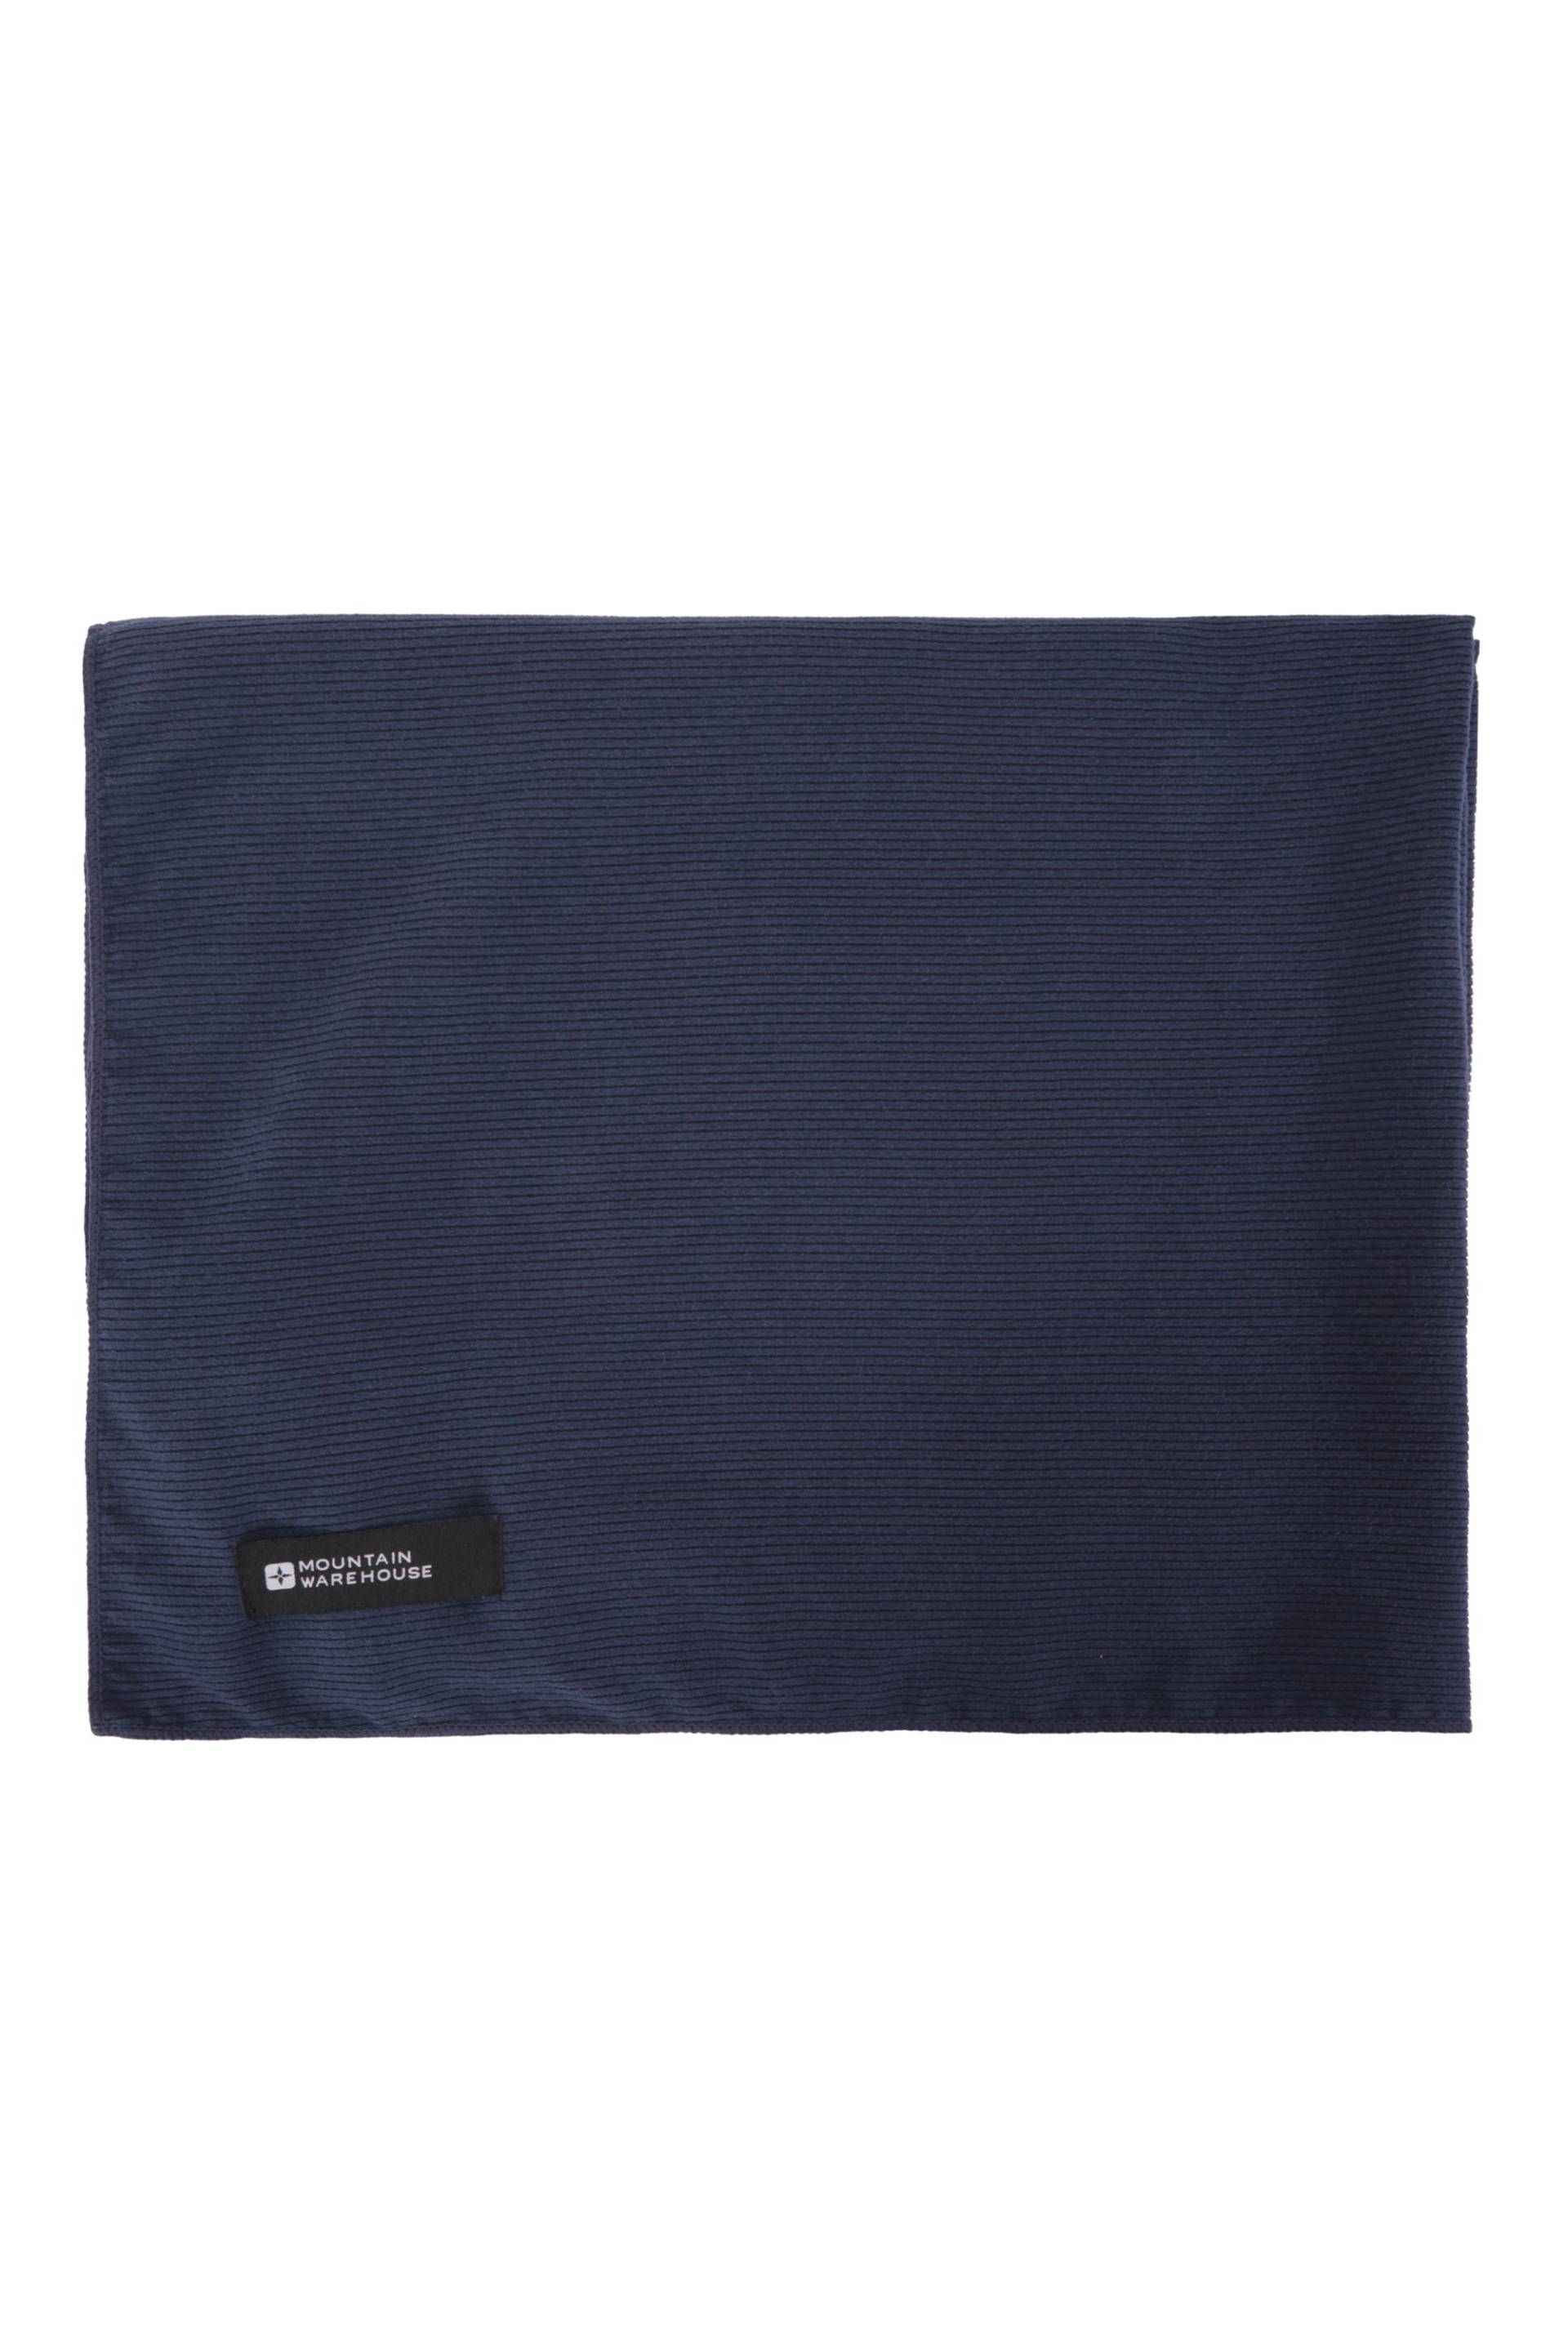 Riesiges Geripptes Handtuch - 150 x 85cm - Marineblau von Mountain Warehouse